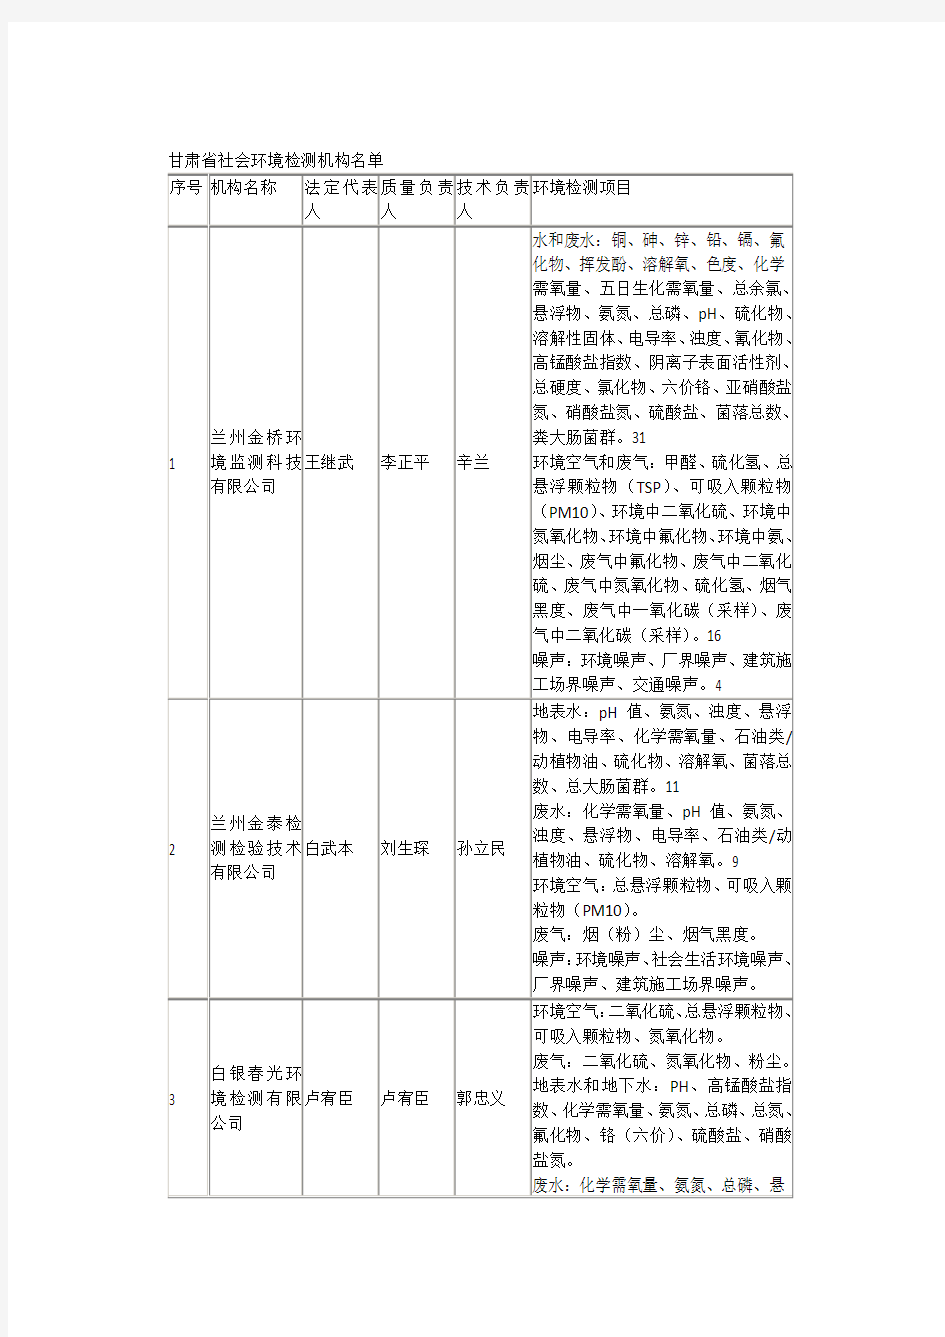 甘肃省社会环境检测机构名单